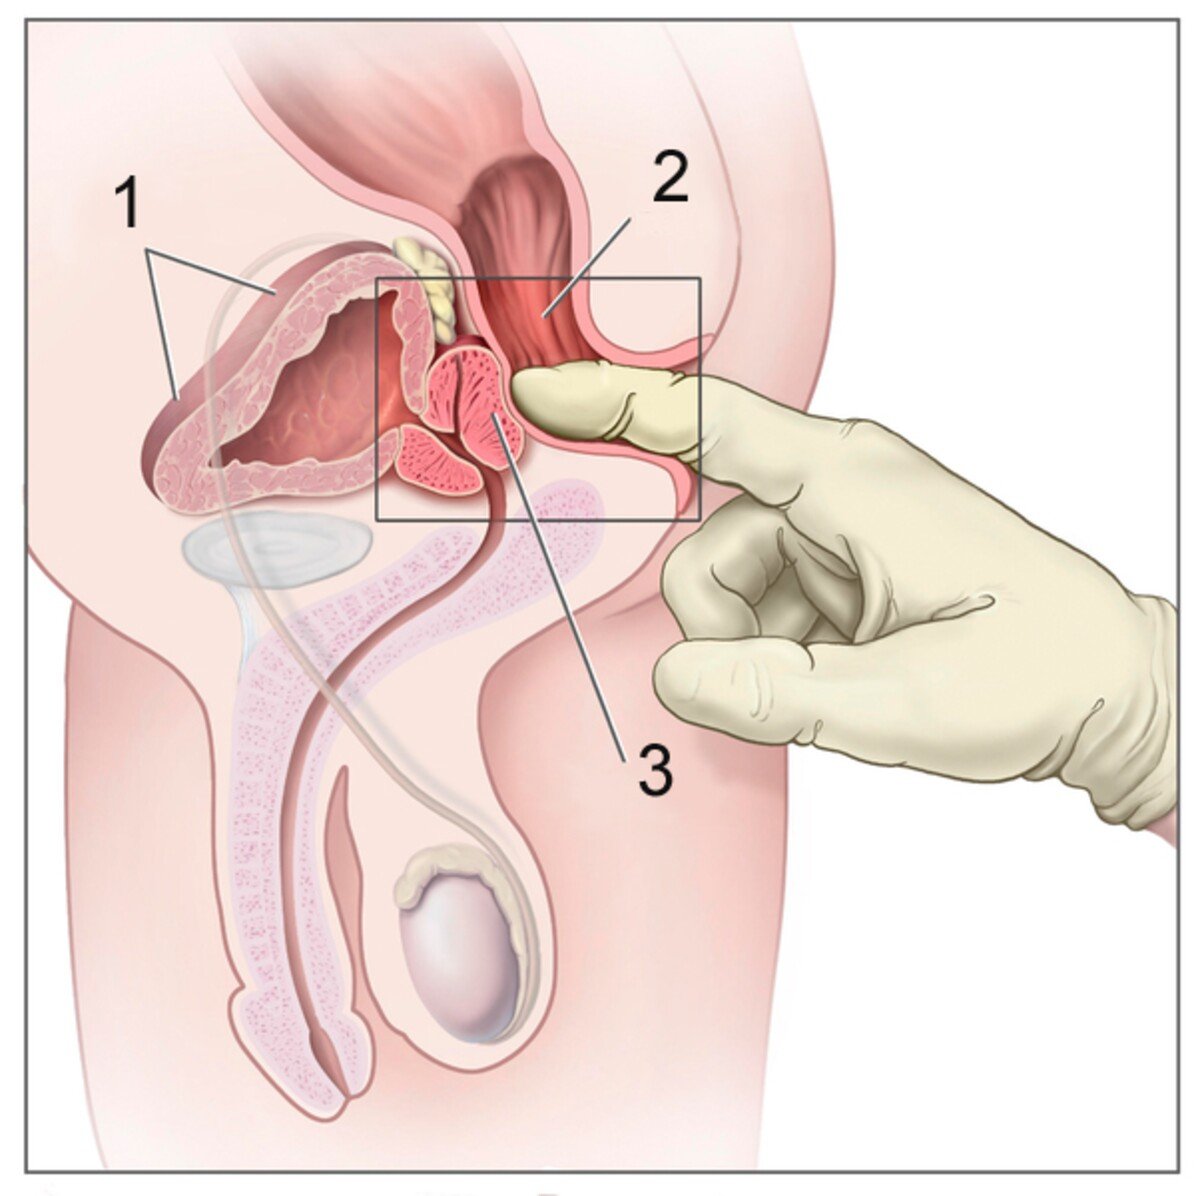 Snímka rektálneho vyšetrenia: 1 – močový mechúr, 2 – konečník a 3 – prostata.